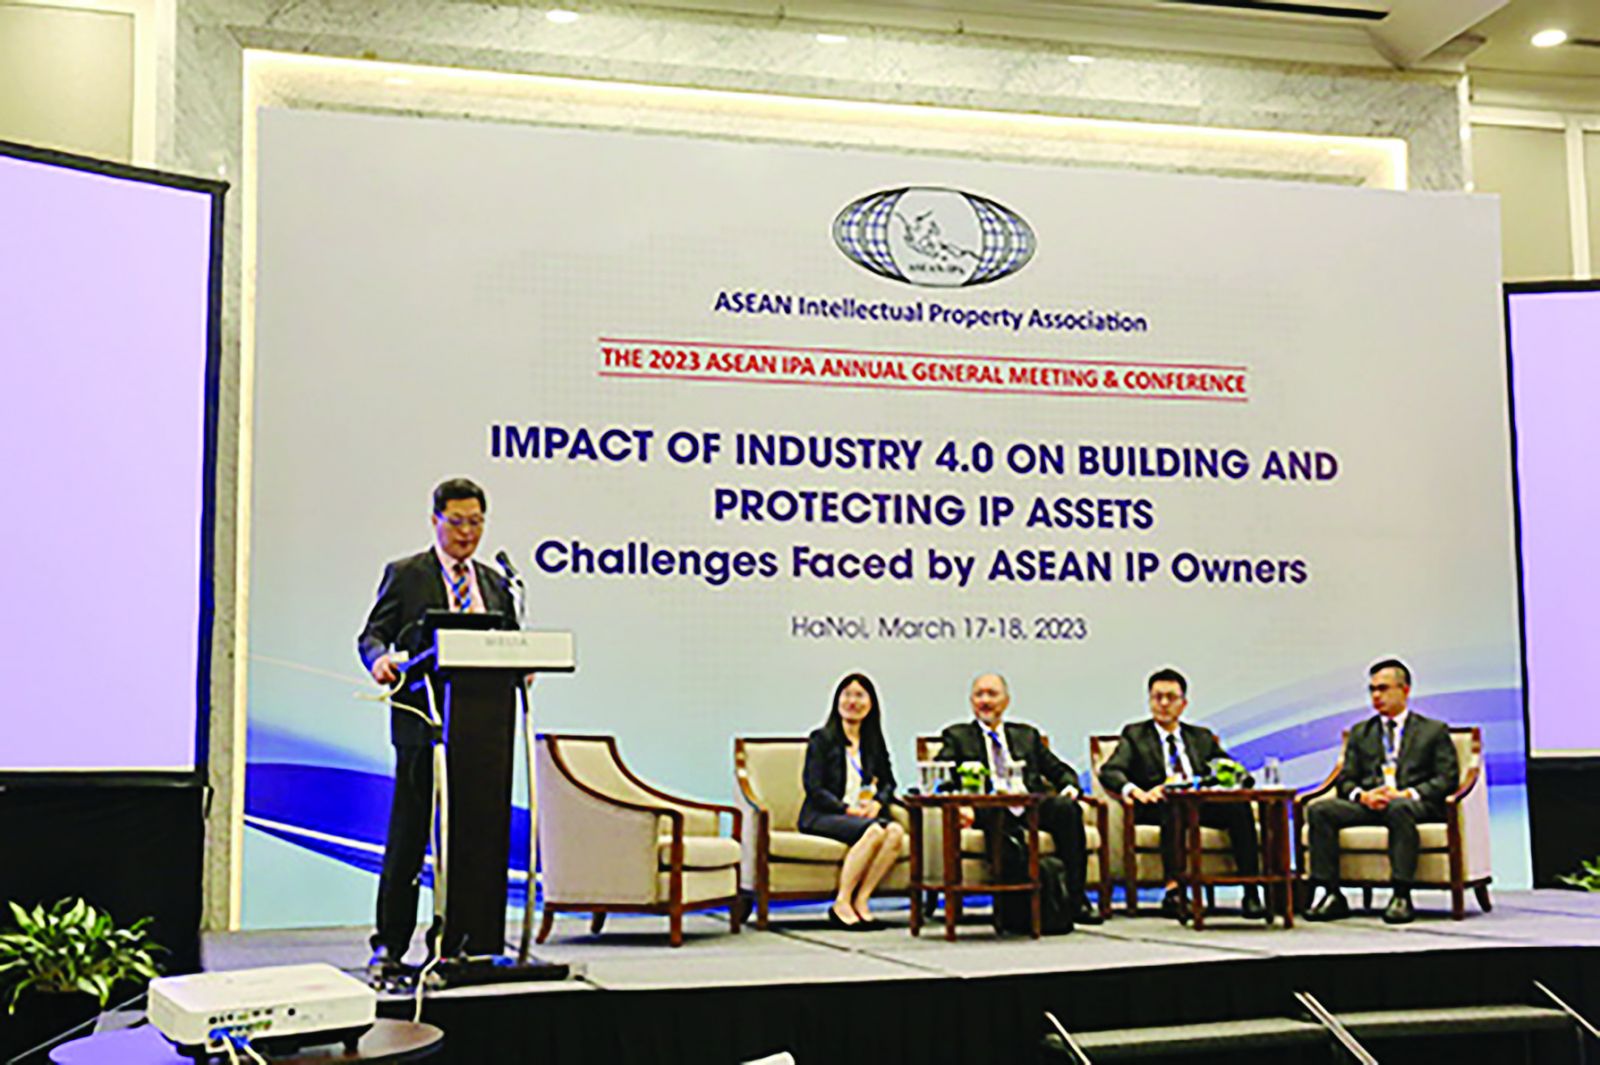  Hội nghị thường niên Hội Sở hữu trí tuệ các nước ASEAN (ASEAN IPA) năm 2023 với chủ đề “Ảnh hưởng của Công nghiệp 4.0 tới xây dựng và bảo hộ tài sản trí tuệ - Các thách thức đối với chủ sở hữu tài sản trí tuệ tại ASEAN”